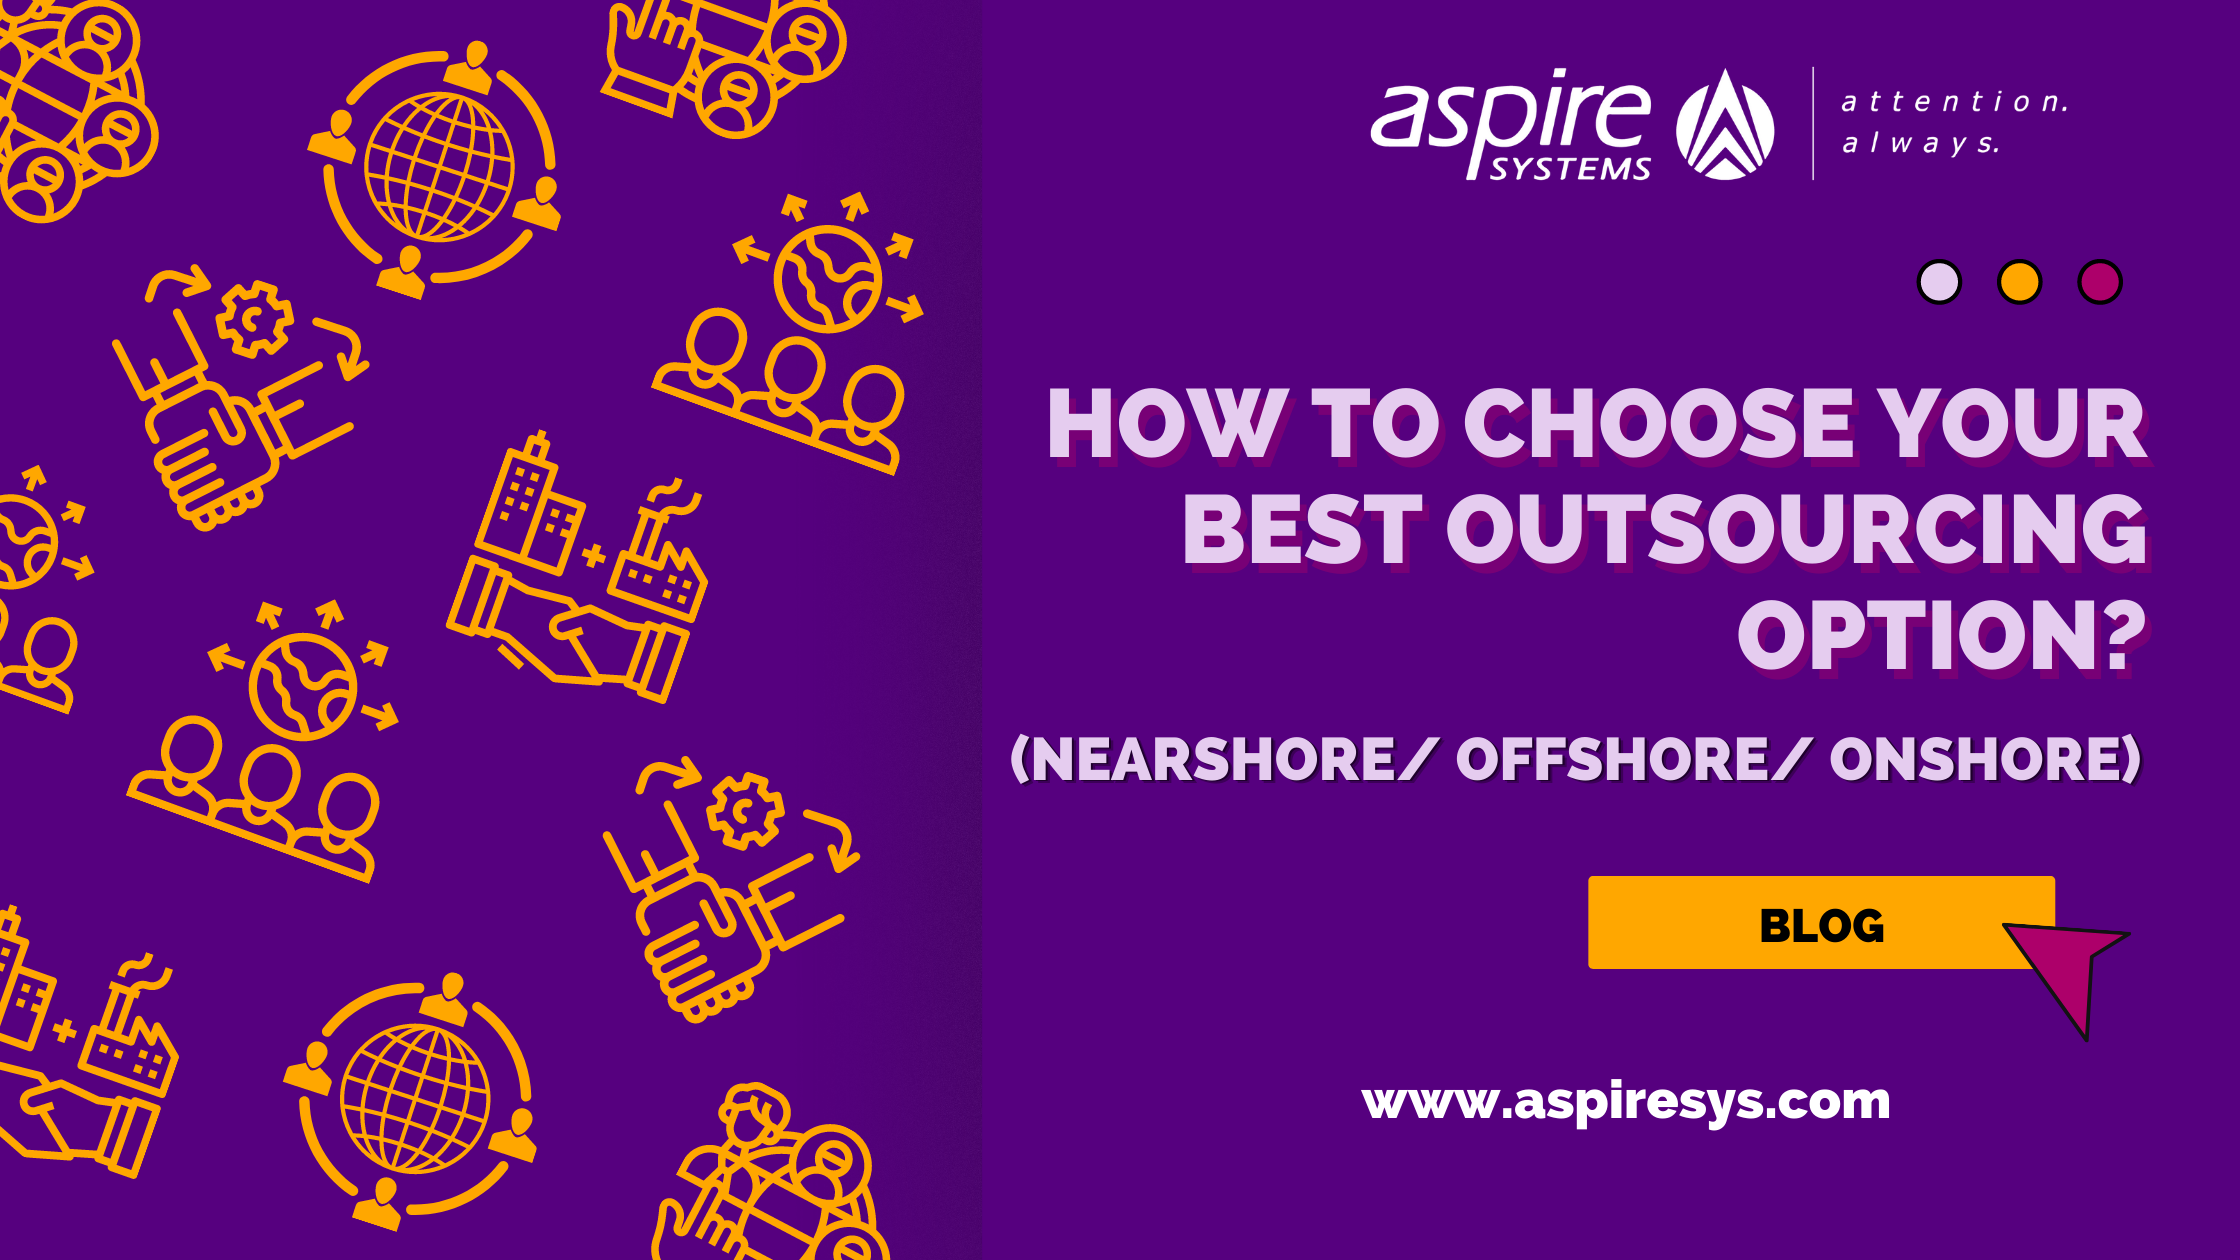 Onshore vs offshore